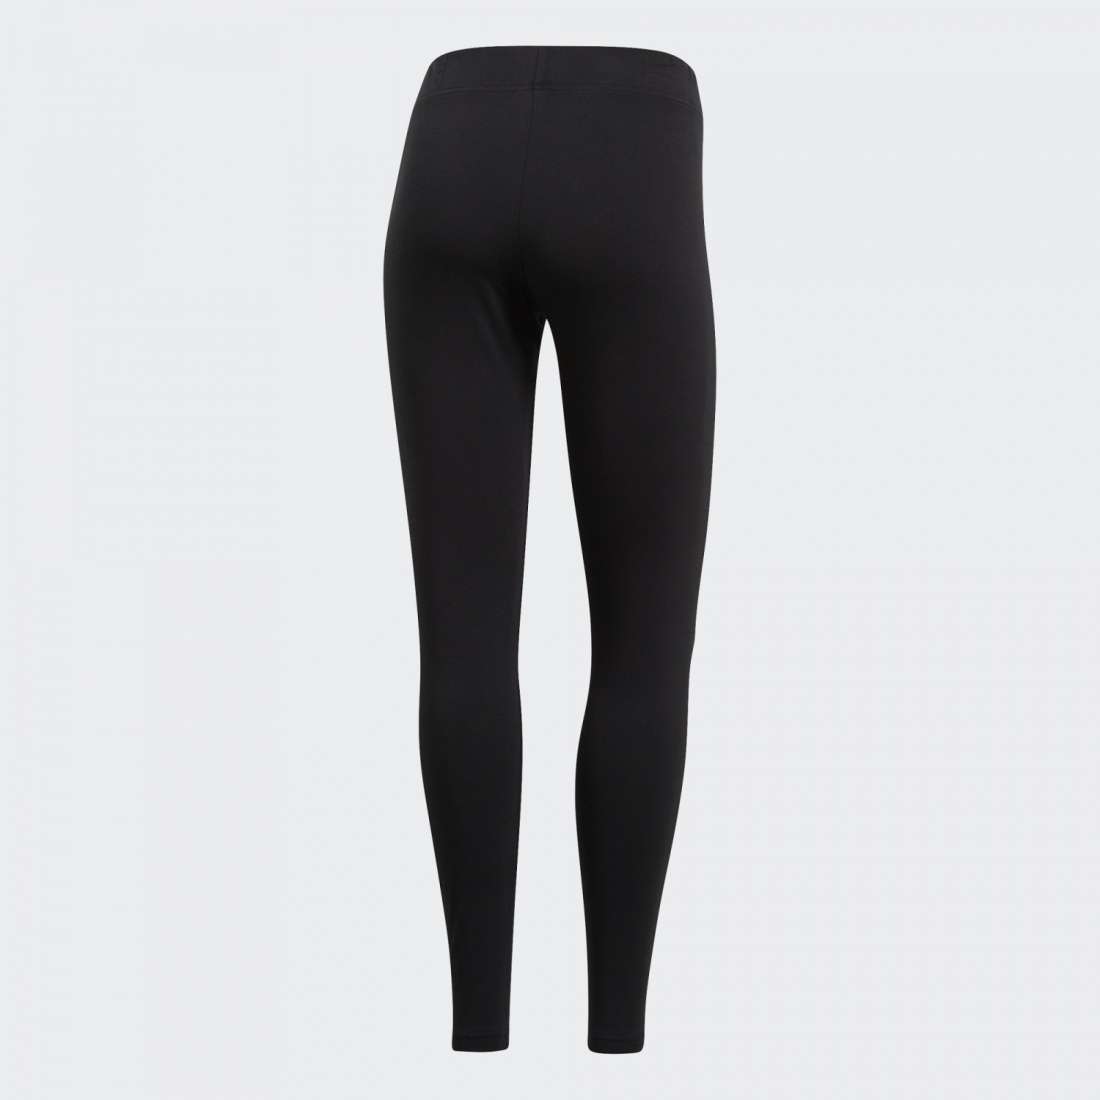 Grupo Lpoint® - Leggings Adidas Essentials Linear Black/white Dp2386